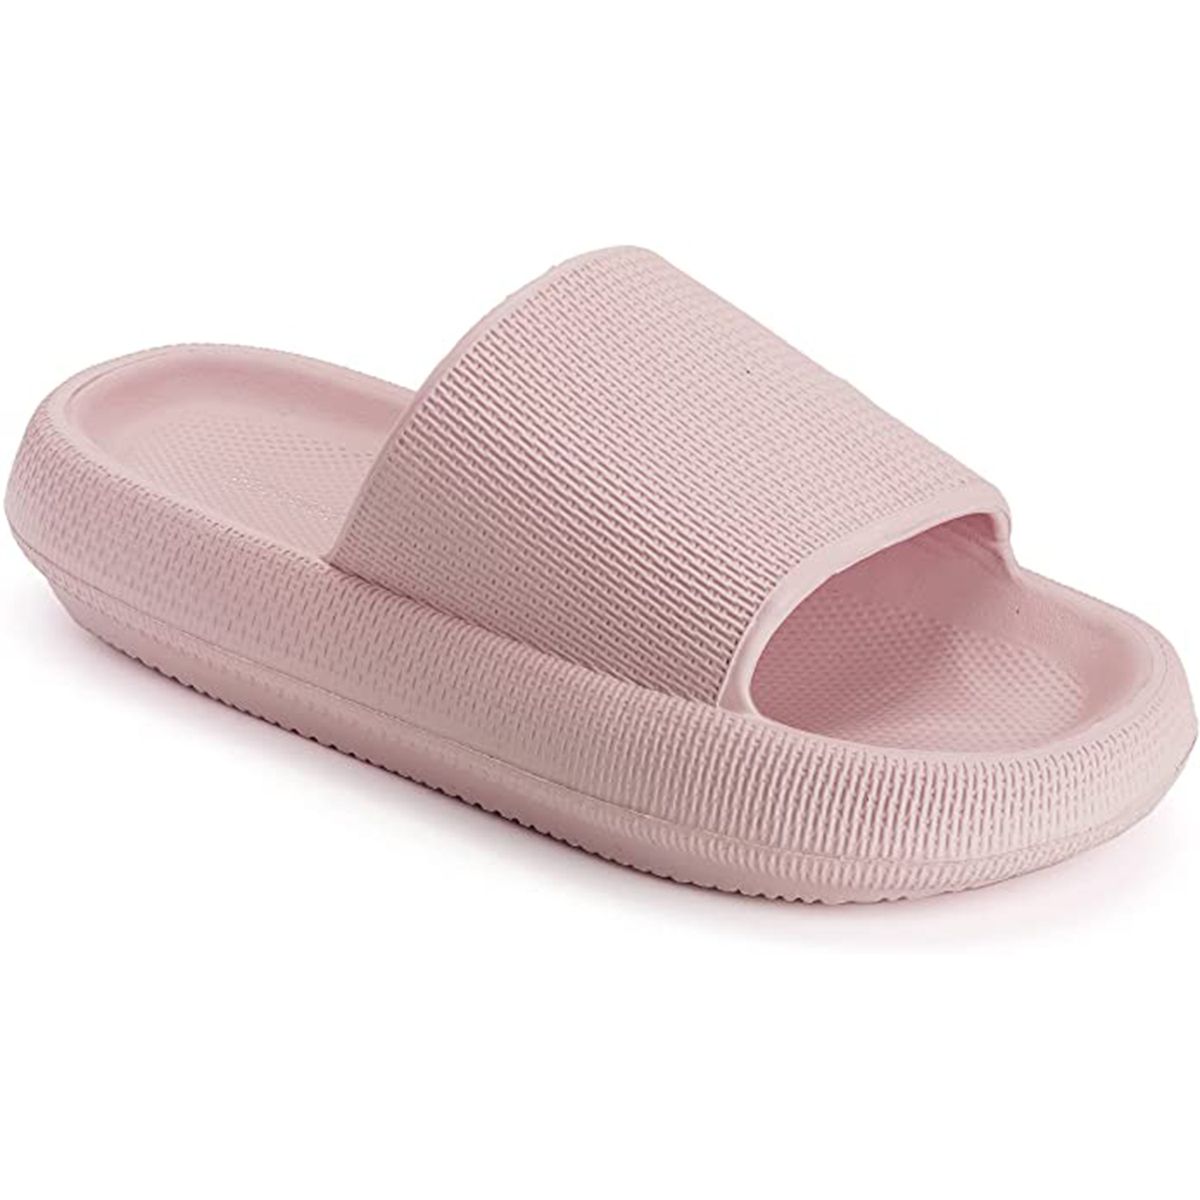 Joomra Pillow Slippers for Women and Men Non Slip Quick Drying Shower Slides